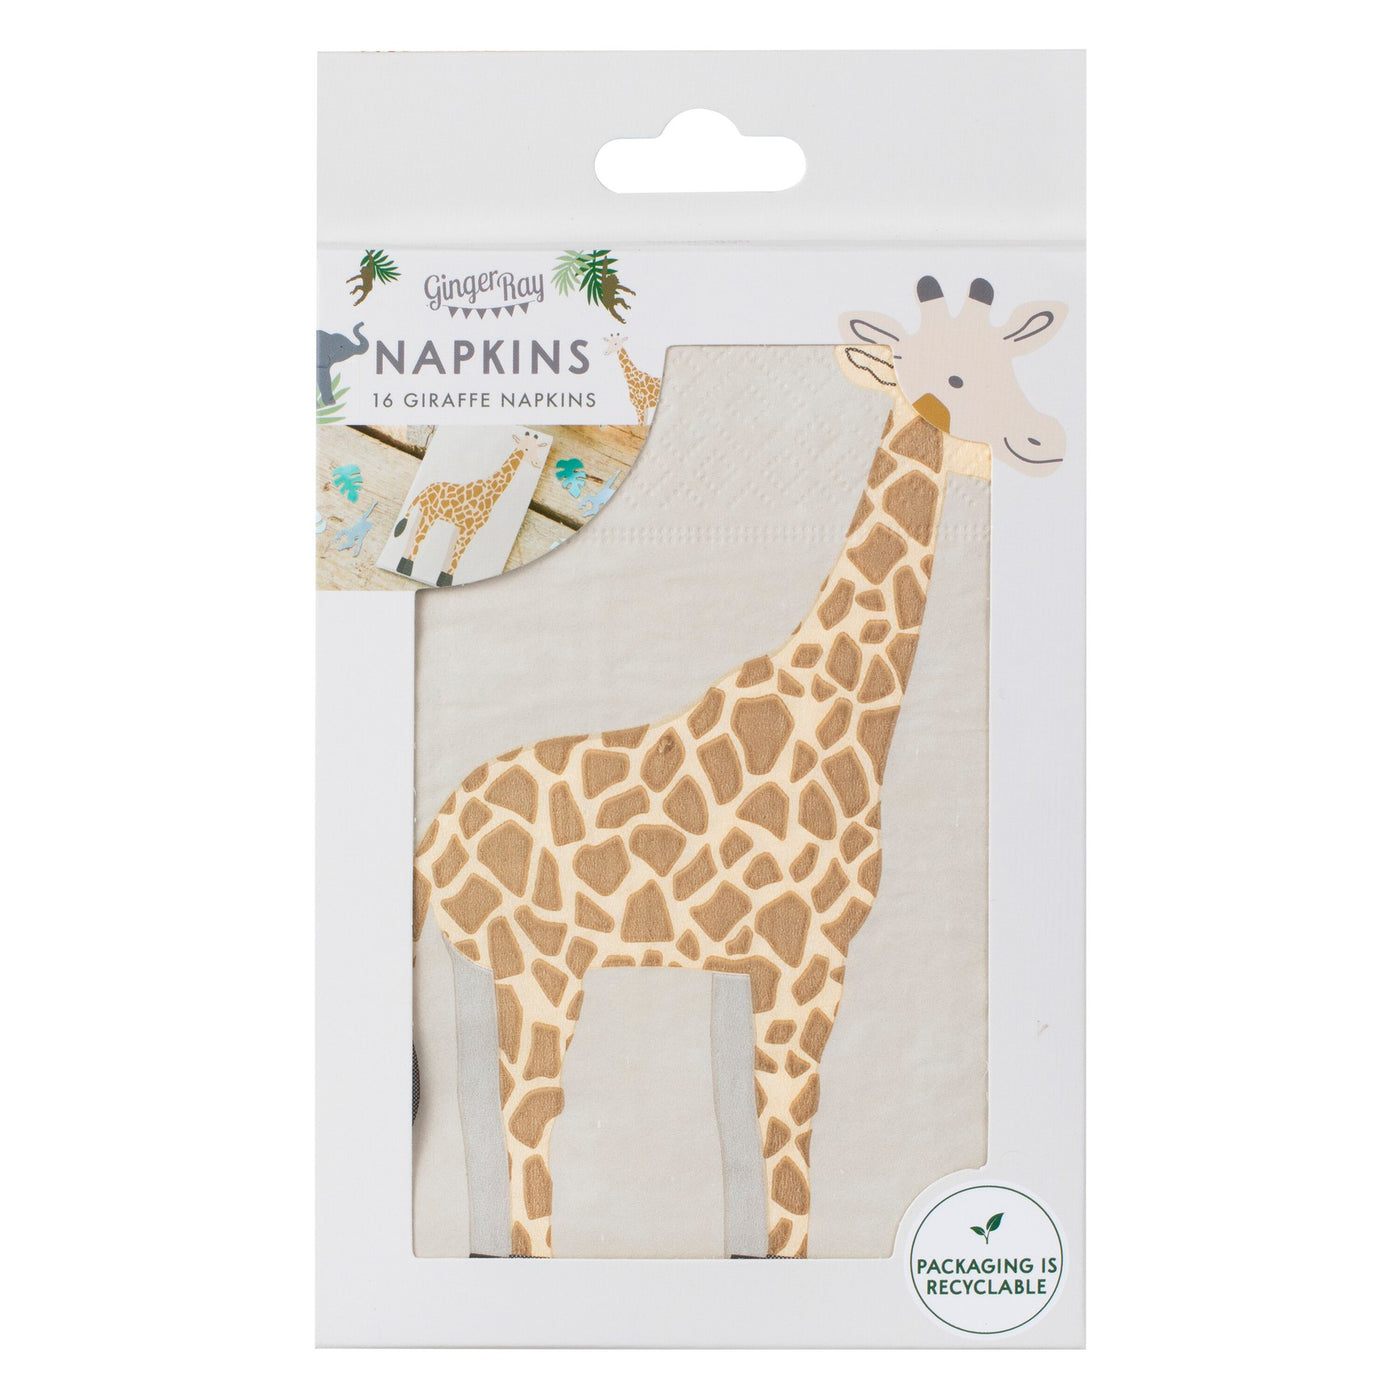 Giraffen Servietten, Tier / Afrika / Safari Party, 16er Pack